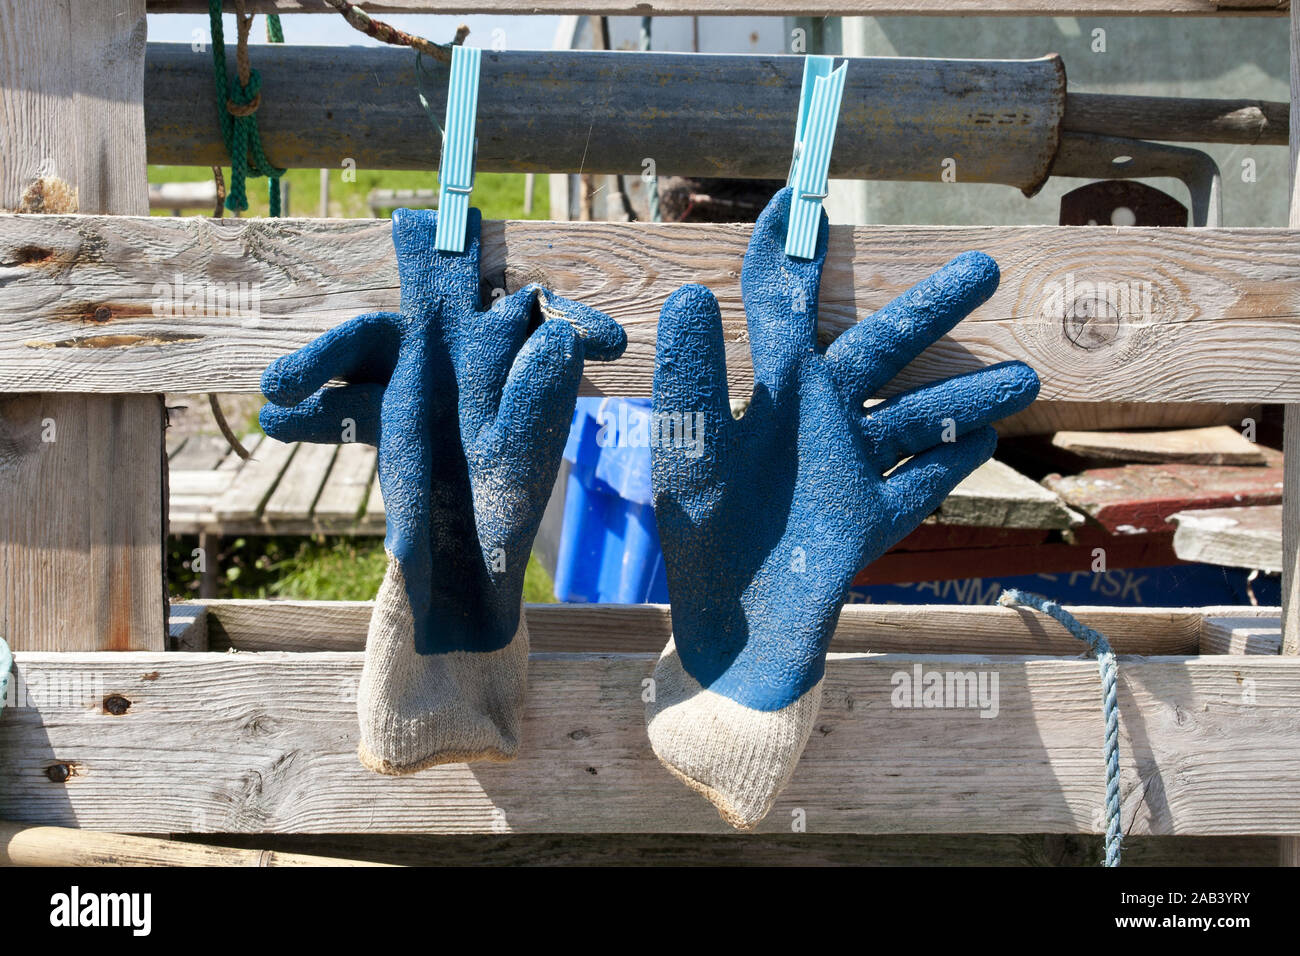 Zum trocknen aufgeh‰ngte Arbeitshandschuhe |For dry suspended working gloves| Stock Photo